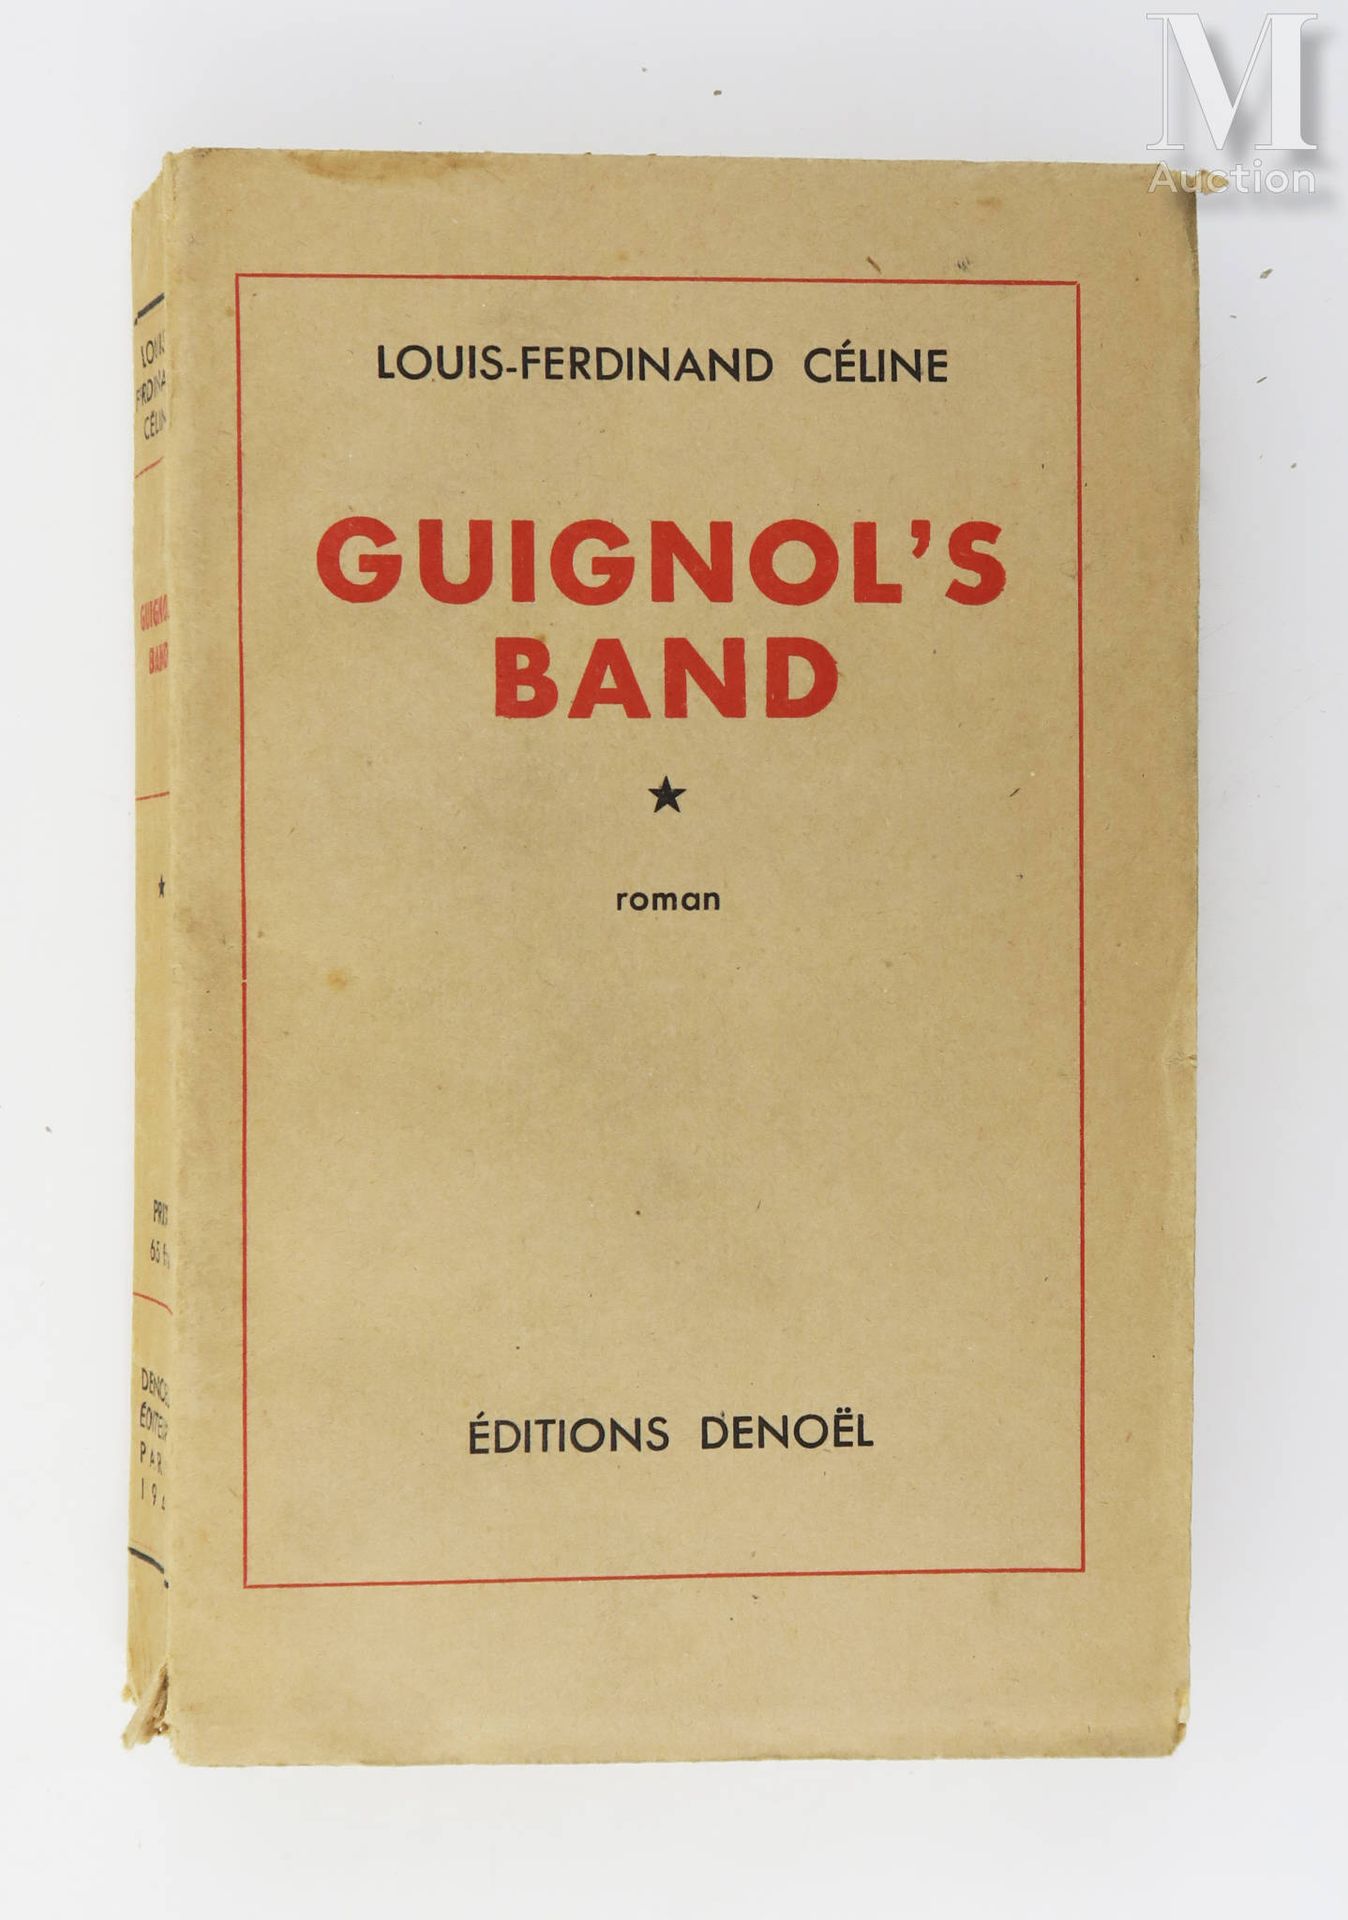 CÉLINE (Louis-Ferdinand). La banda de Guignol. París, Denoël, 1944.

En 8, rústi&hellip;